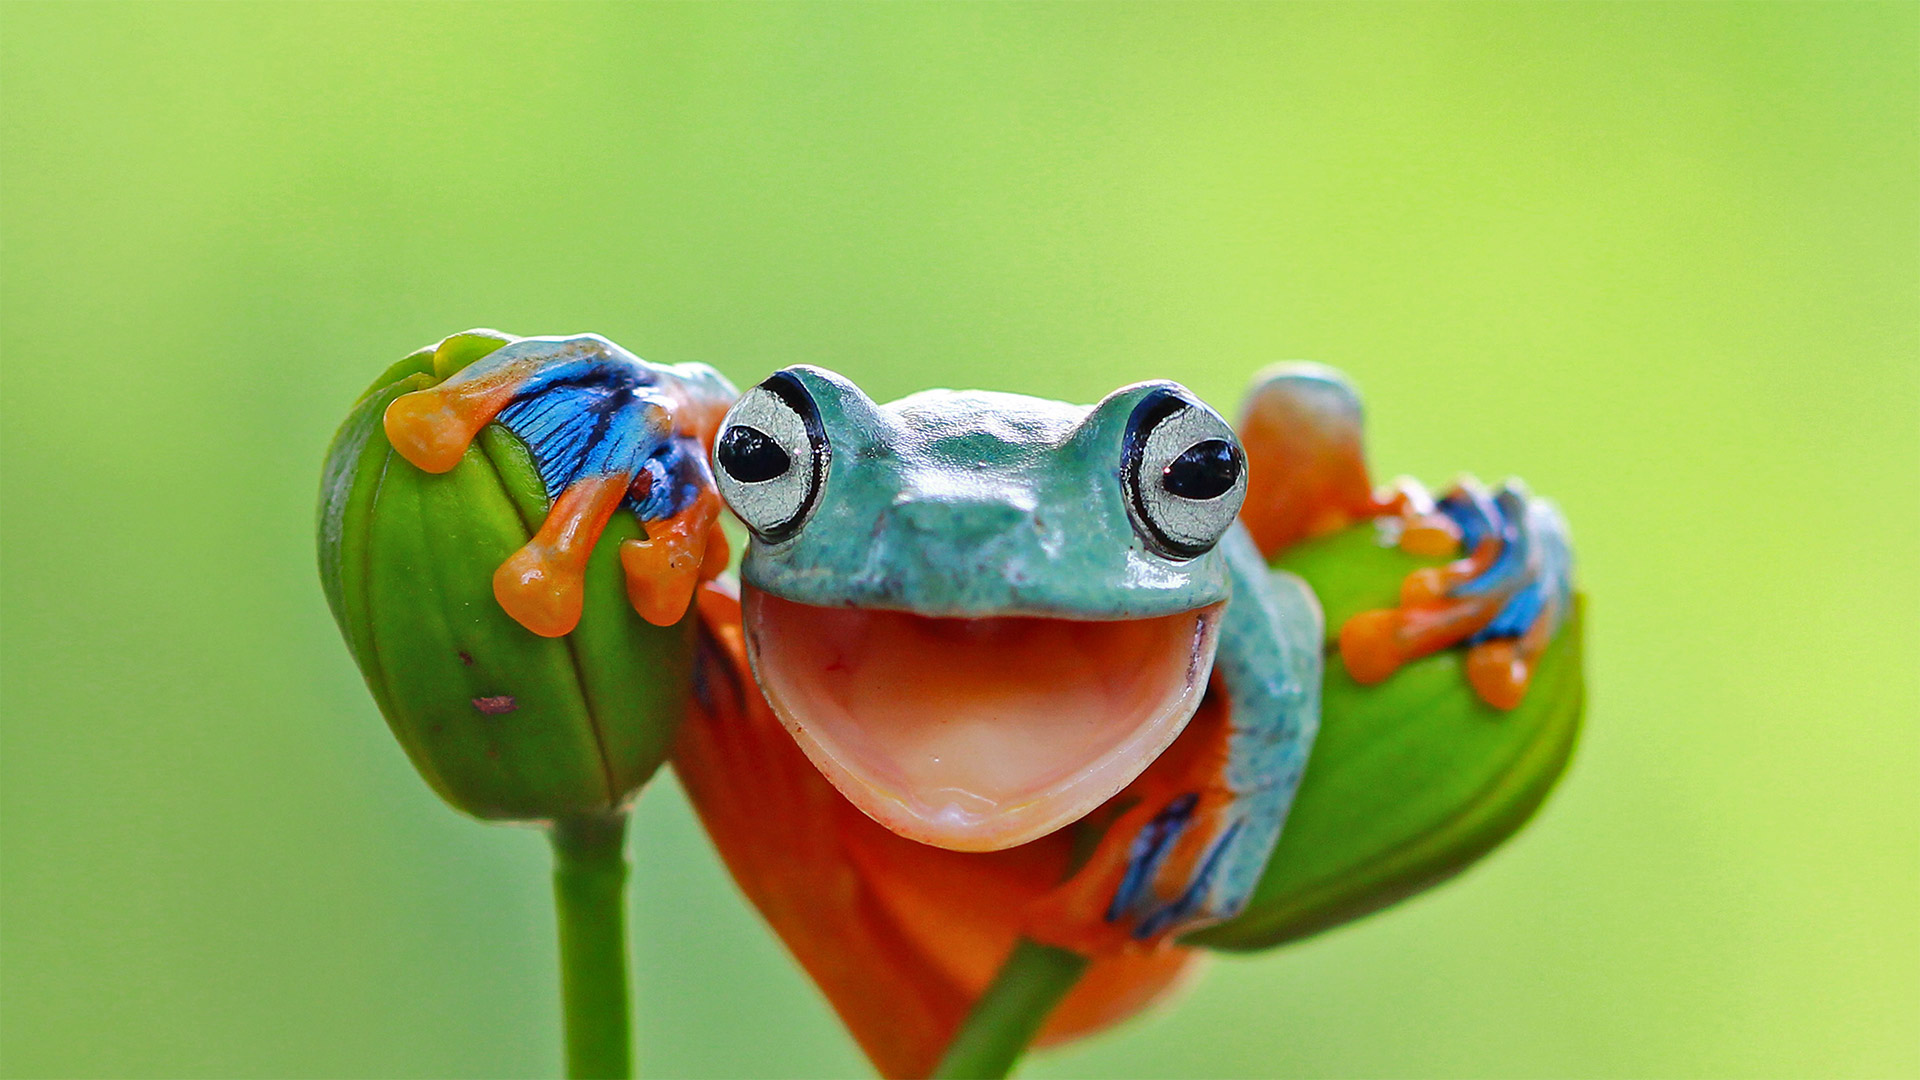 Javan tree frog, Indonesia - kuritafsheen/Getty Images)